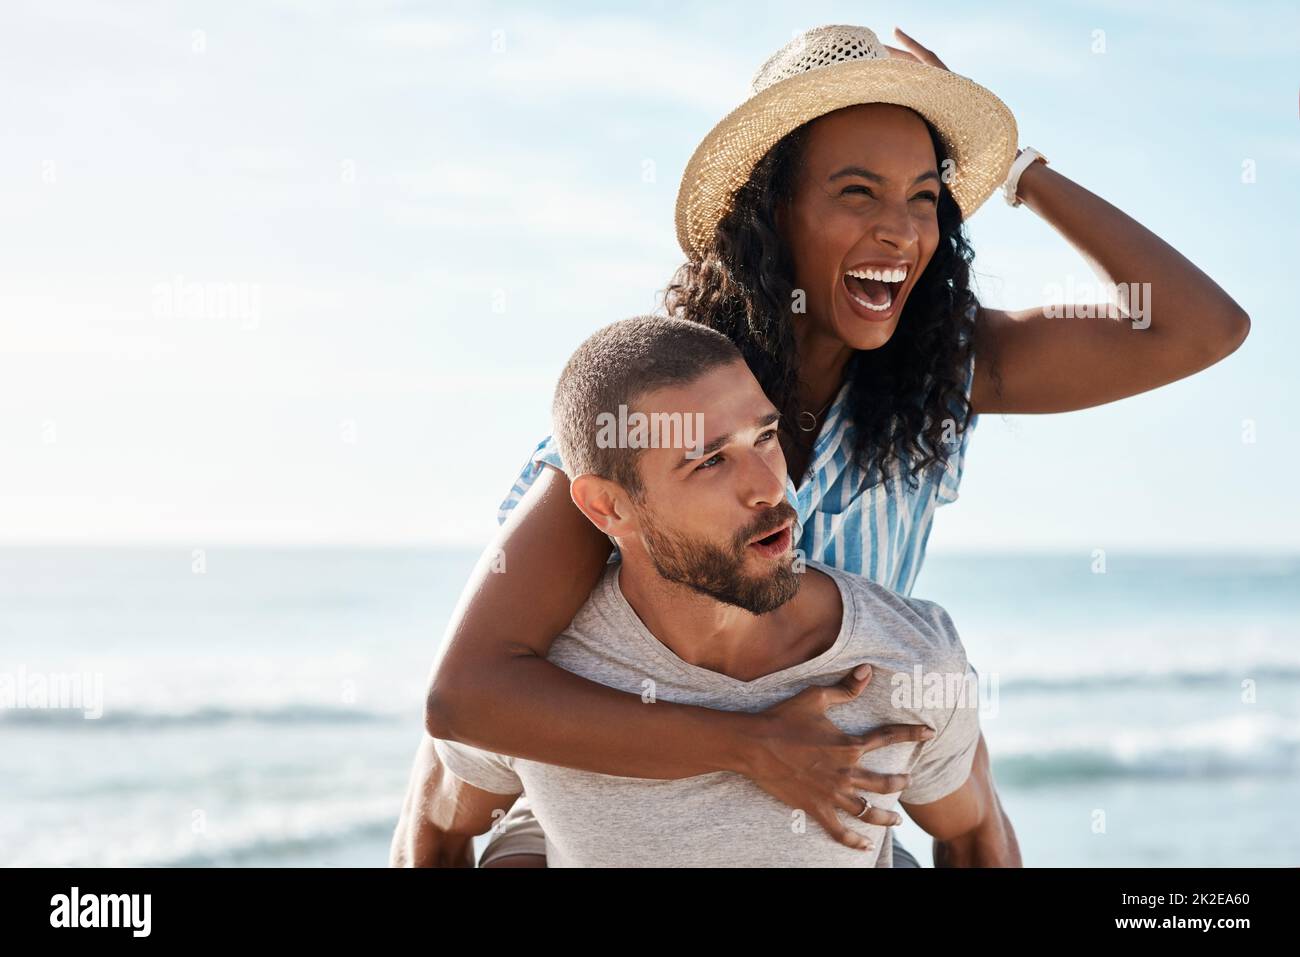 Sehen Sie sich die Sehenswürdigkeiten rund um das Meer an. Aufnahme eines jungen Mannes mit Huckepack seiner Freundin am Strand. Stockfoto